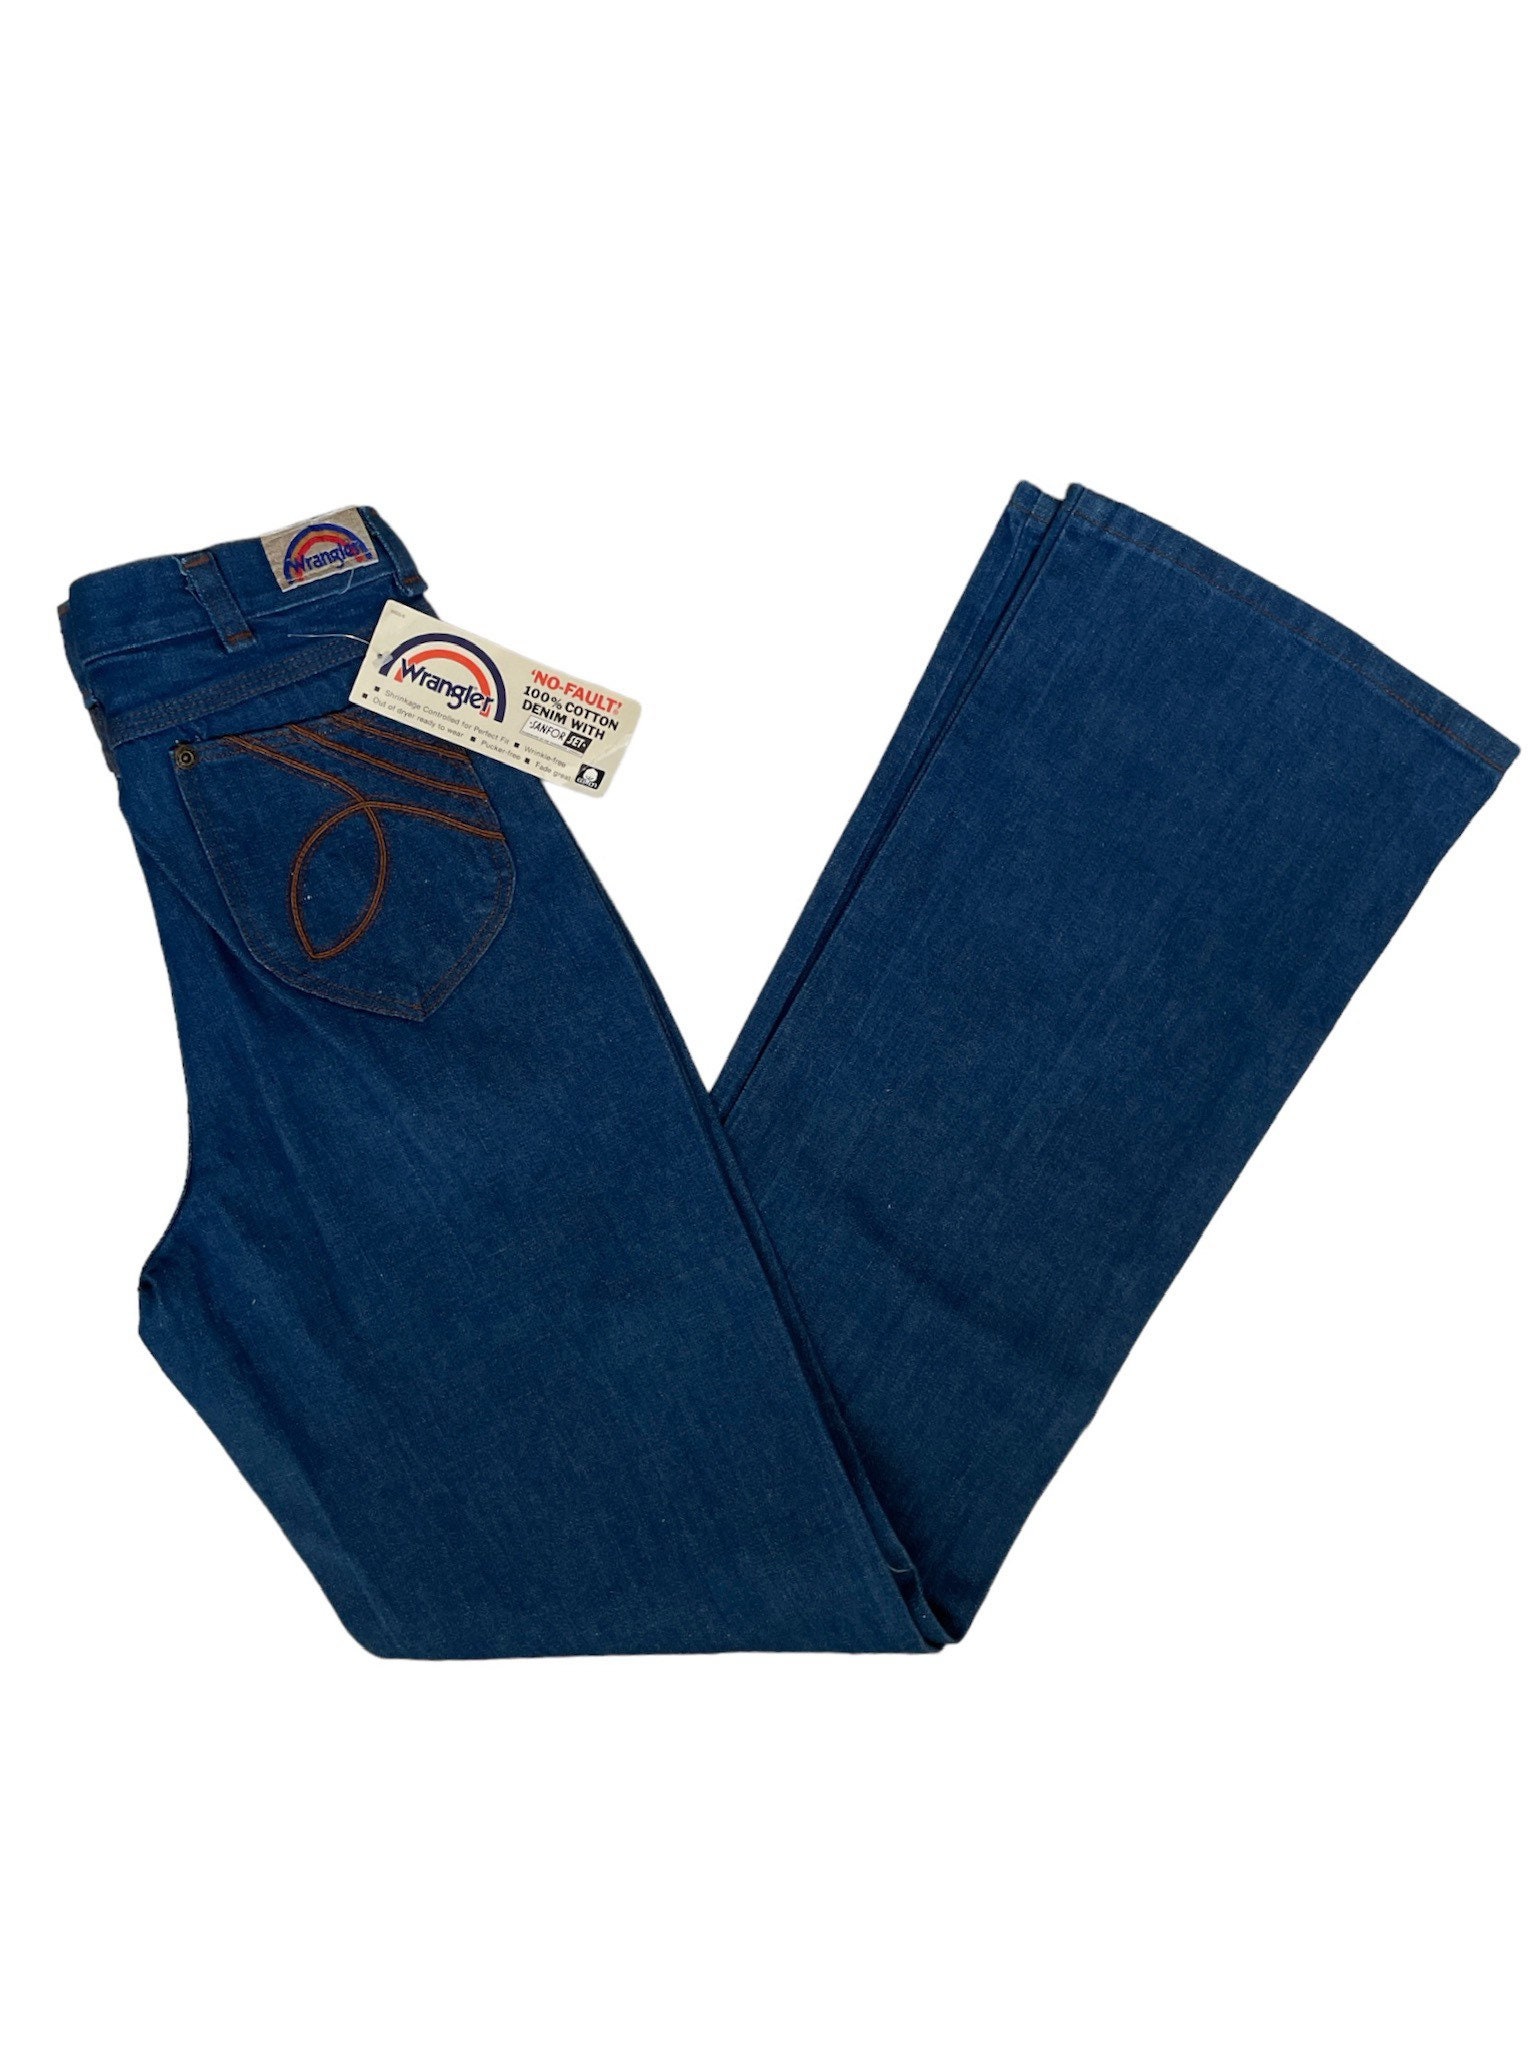 Vintage Wrangler Friar Tuck Boot Flare Jeans Size 30x34 - Etsy Sweden